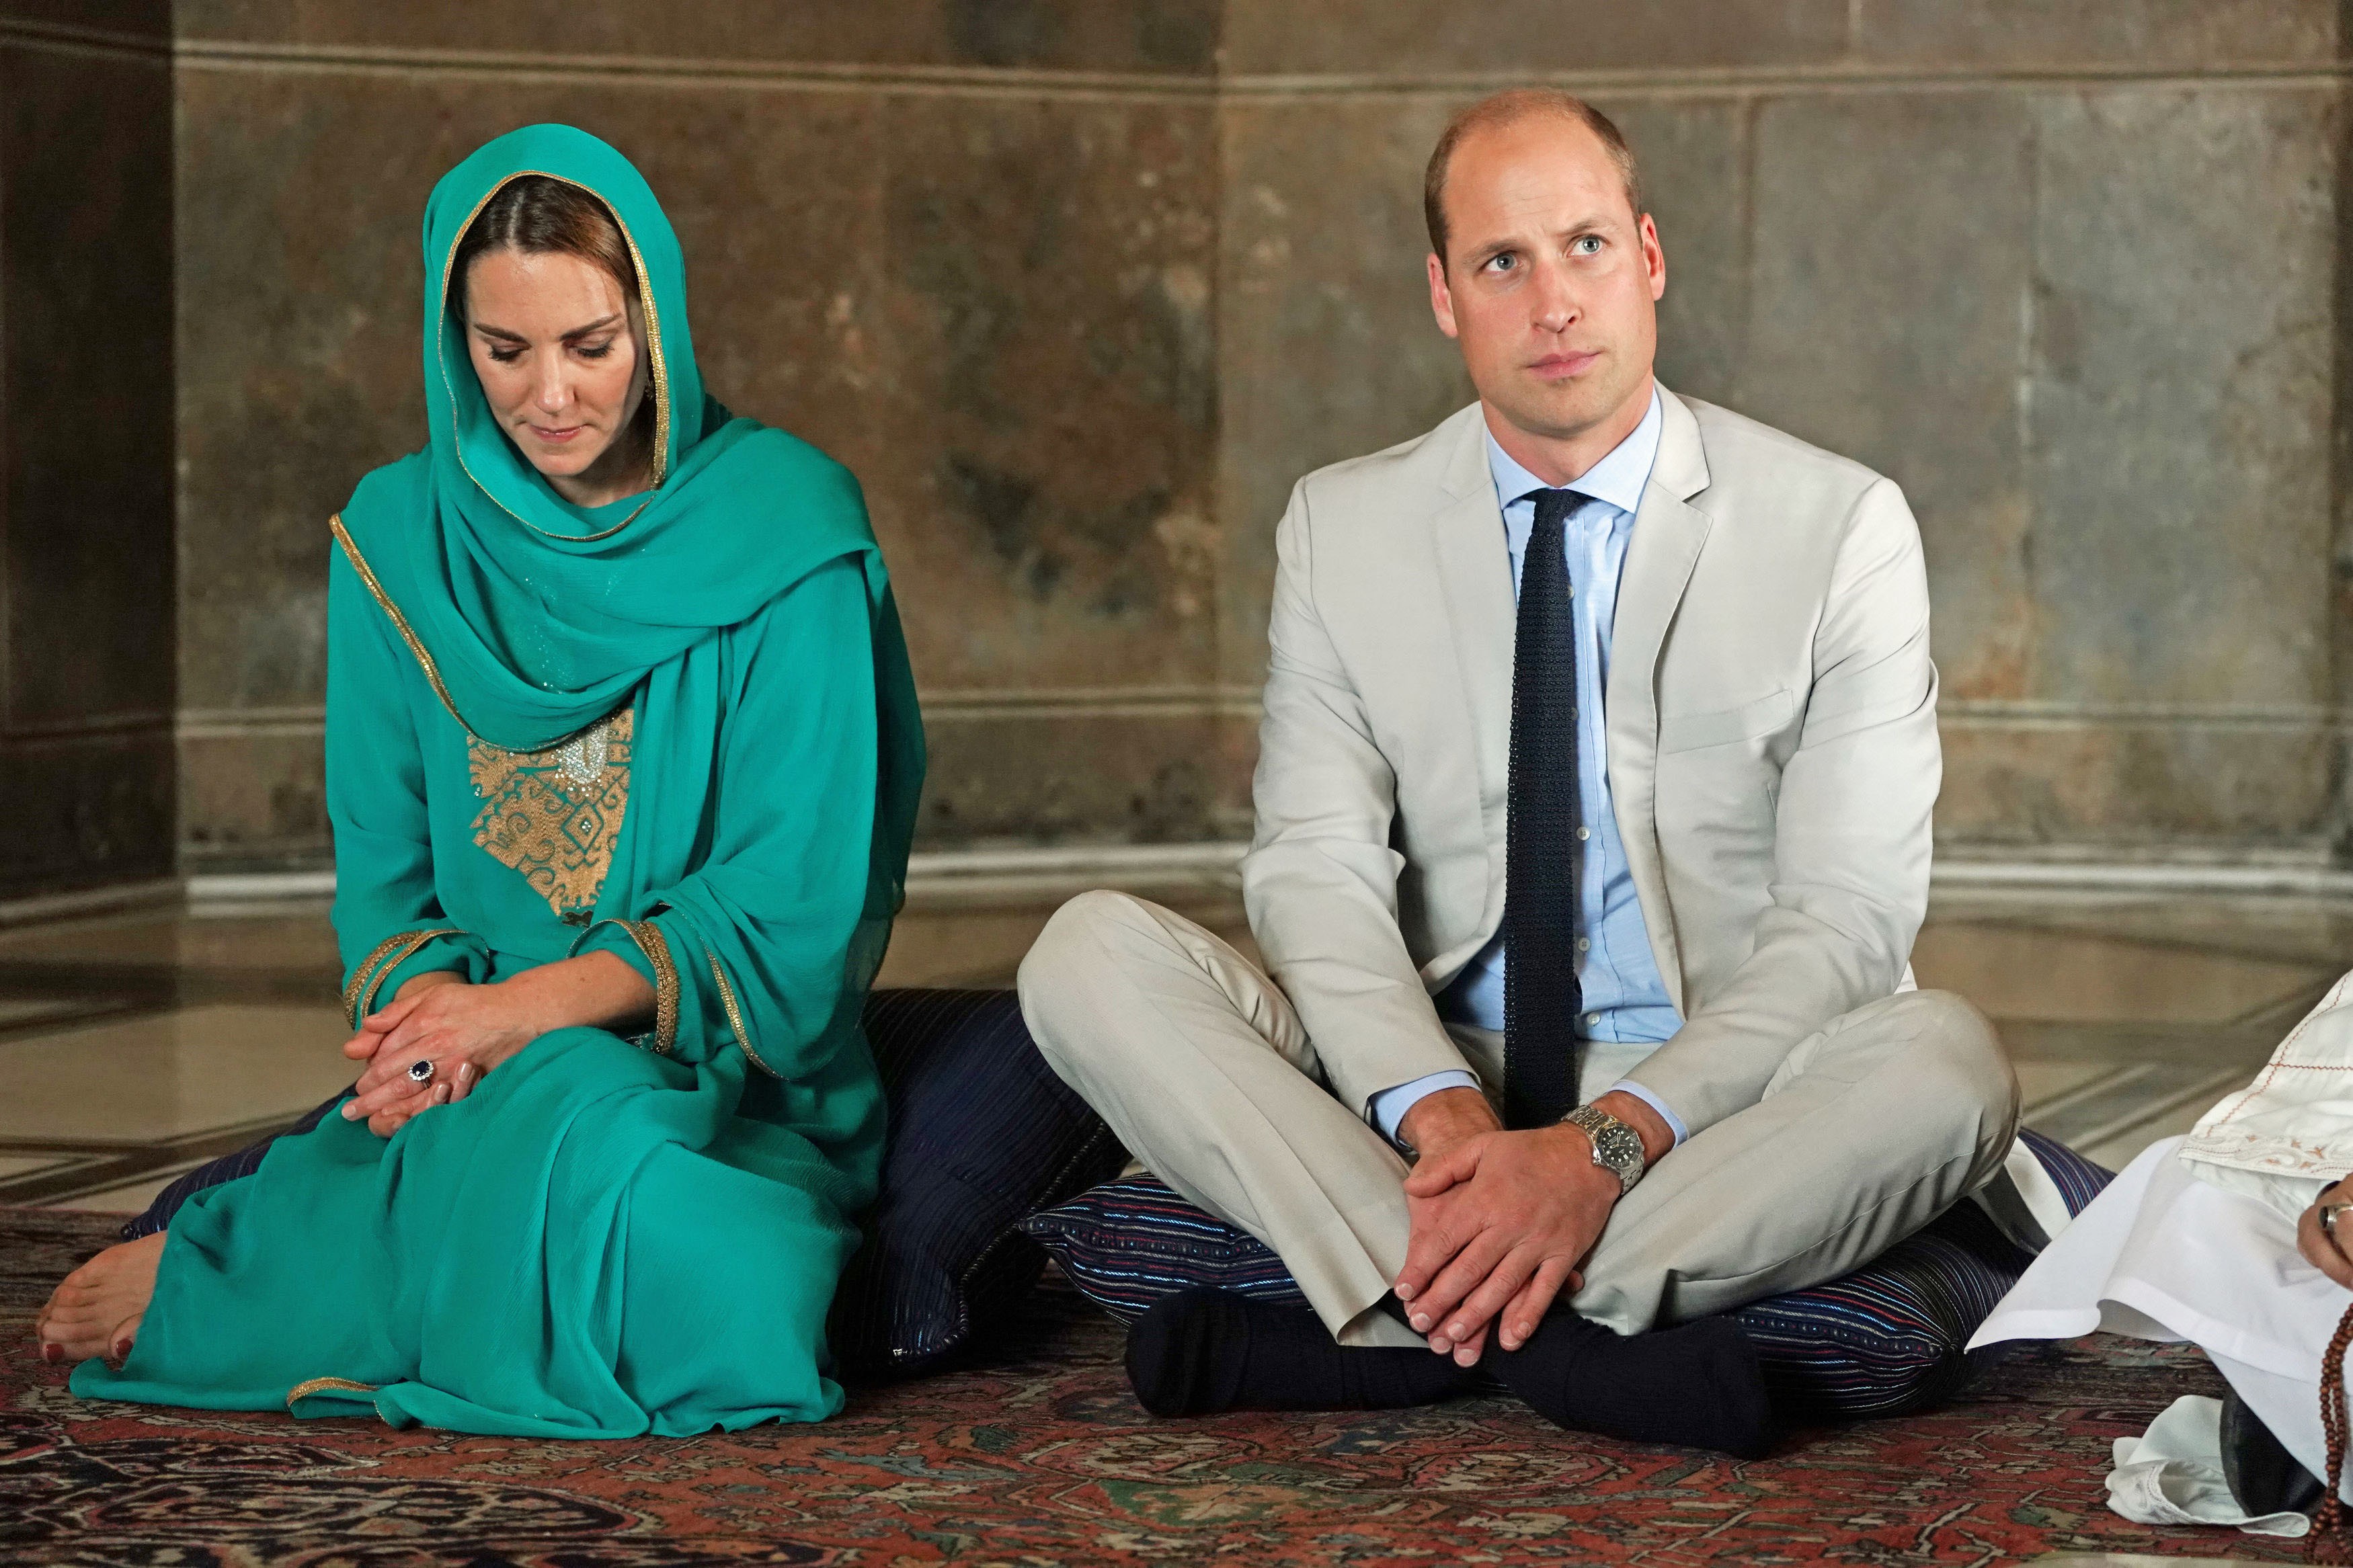 Príncipe William e Kate Middleton em visita à mesquita (Foto: Reprodução/Getty)